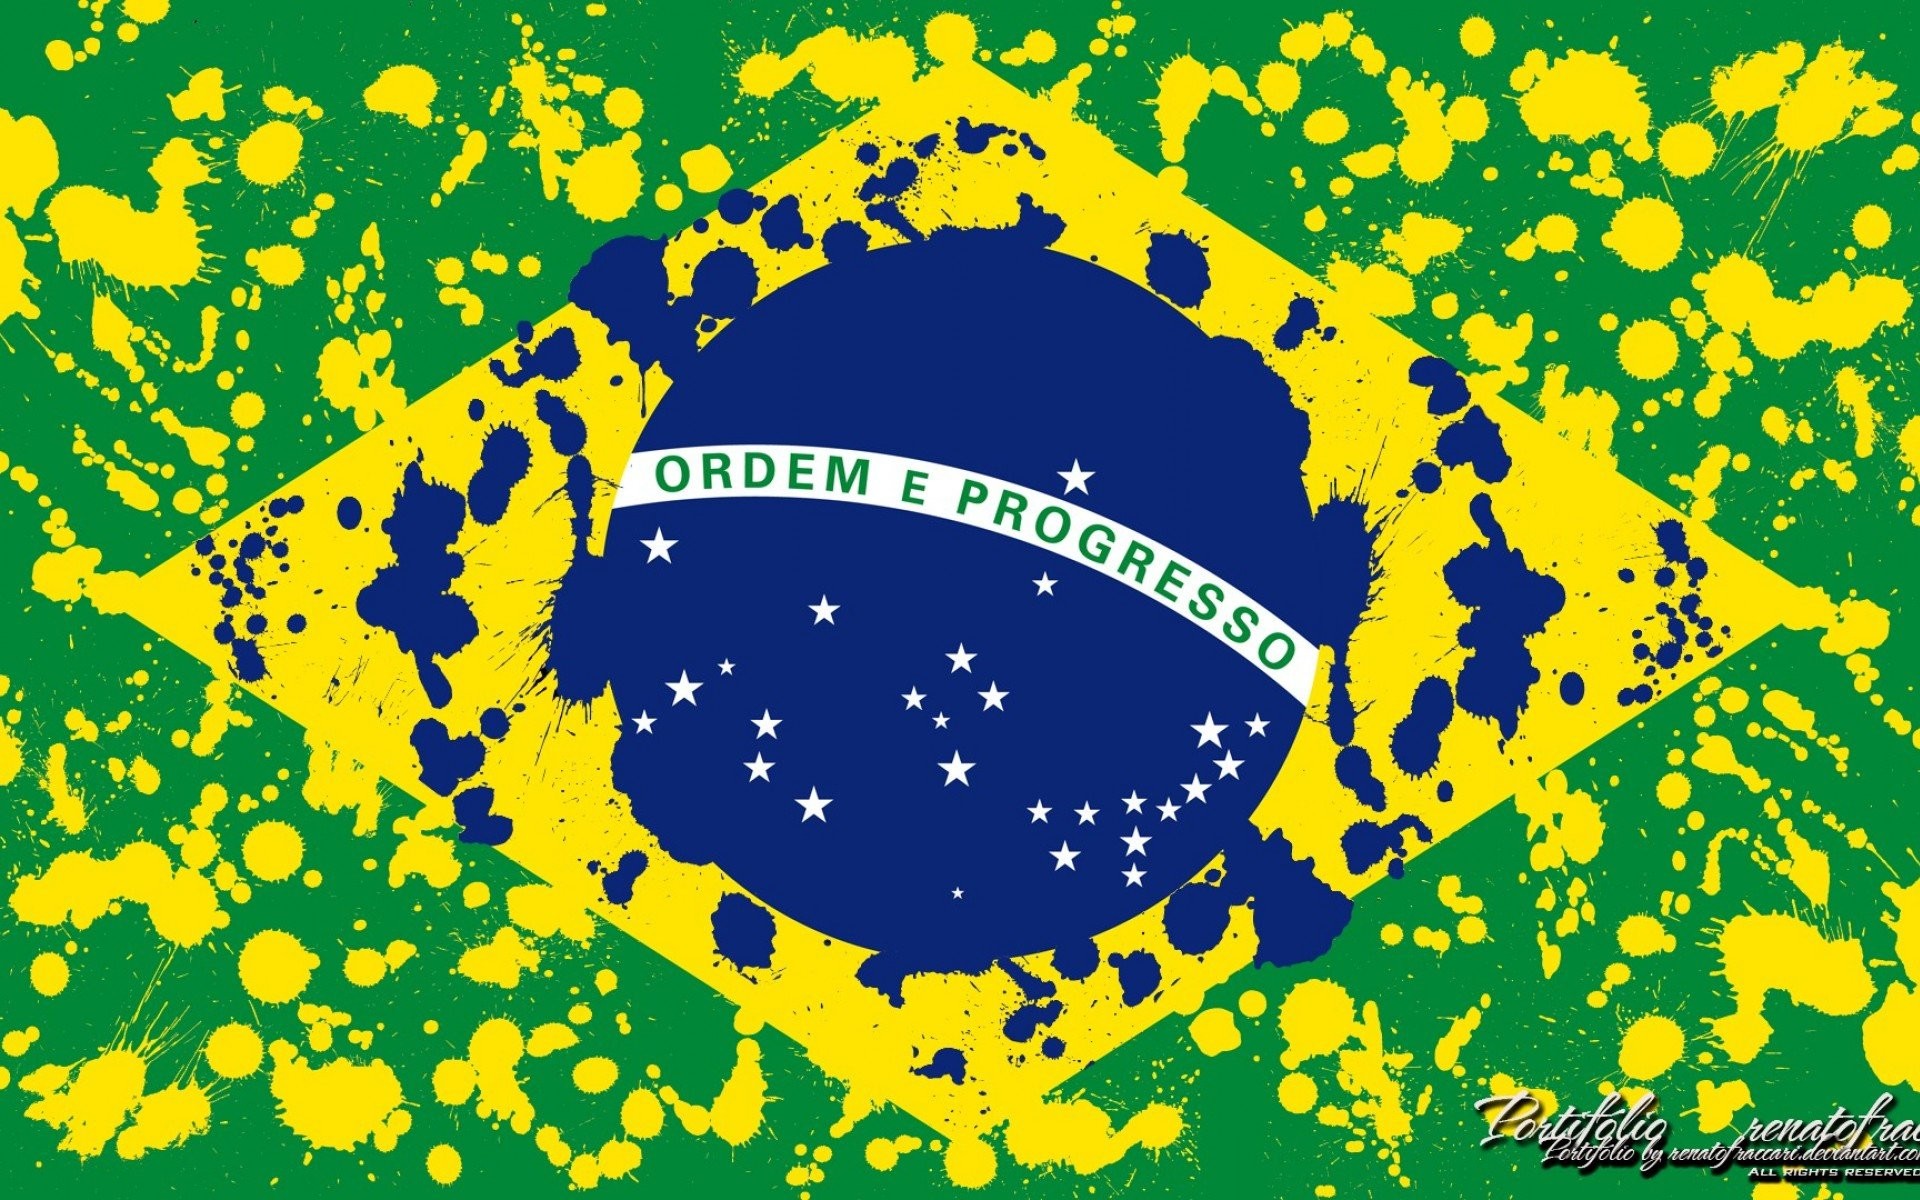 Brazil Flag Wallpaper  Brazil Flag PNG Image  Transparent PNG Free  Download on SeekPNG